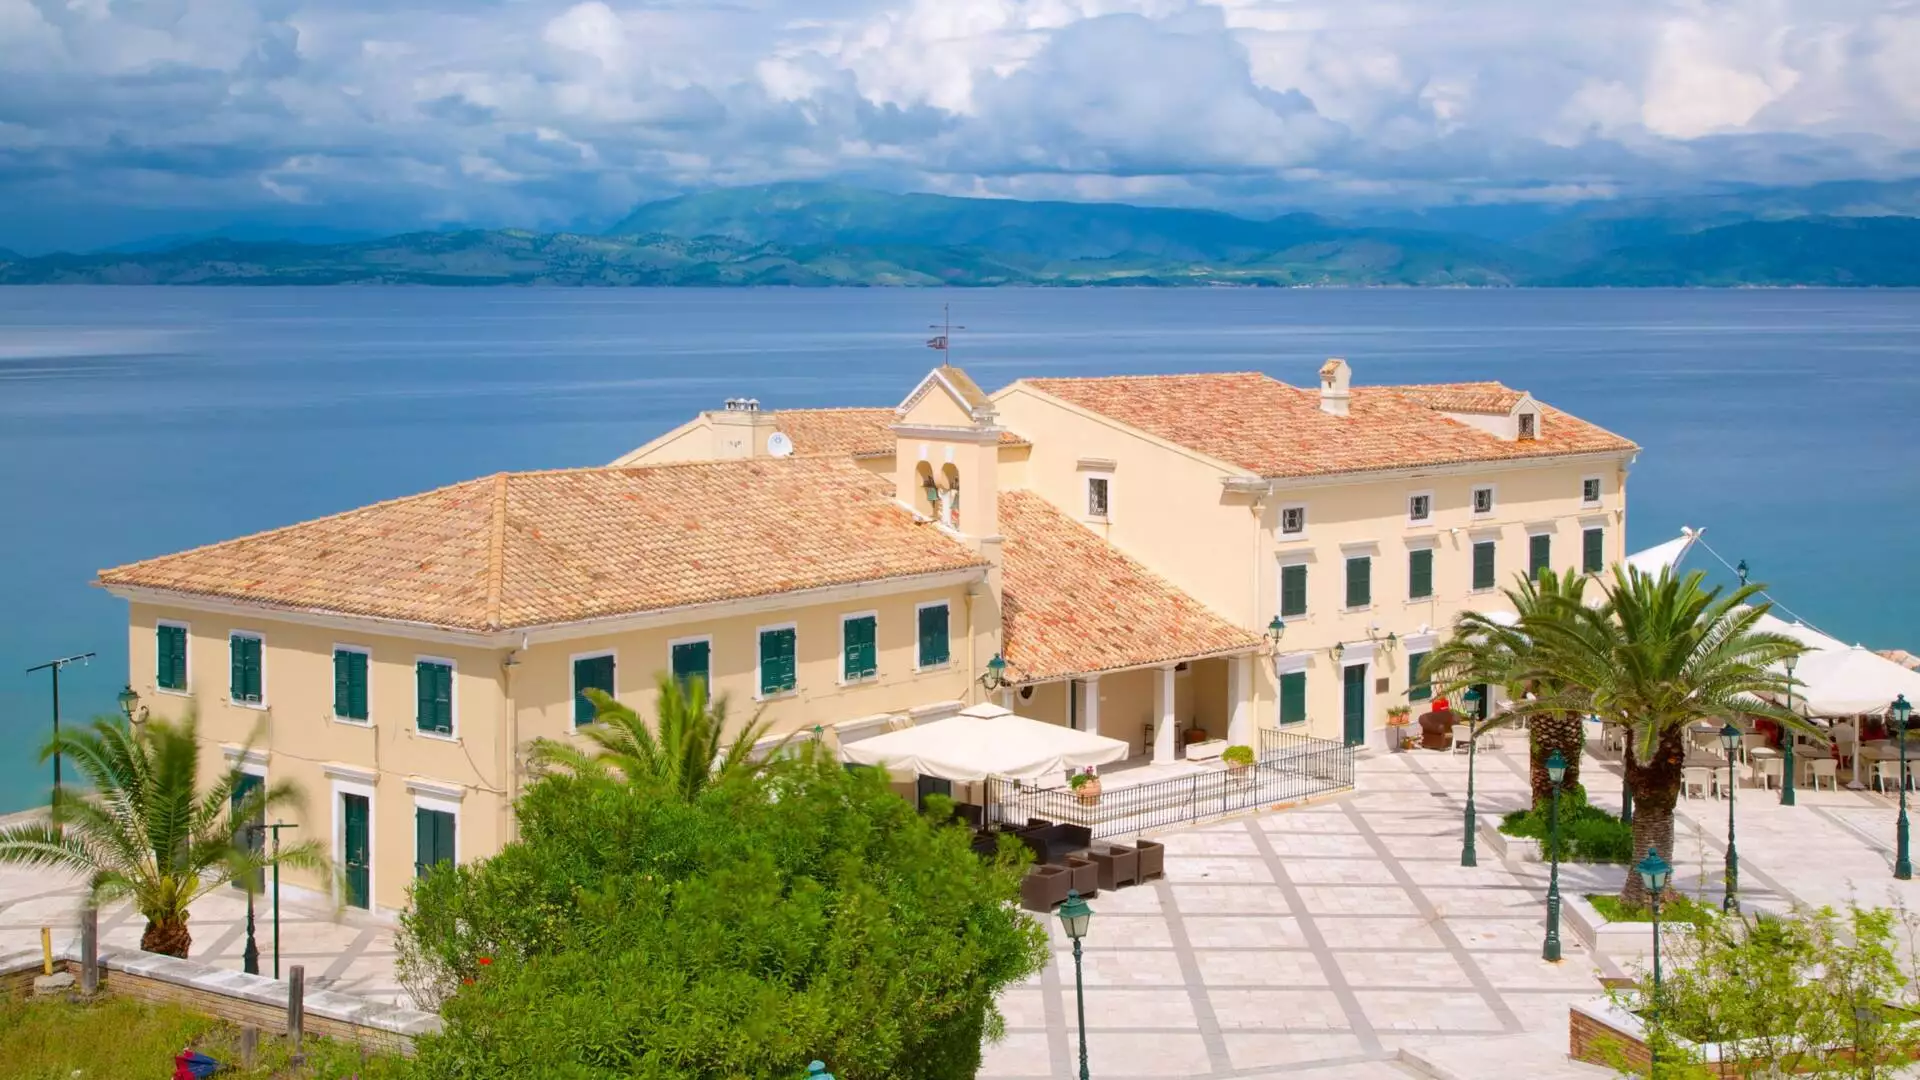 Corfu Town On Corfu Island In Greece